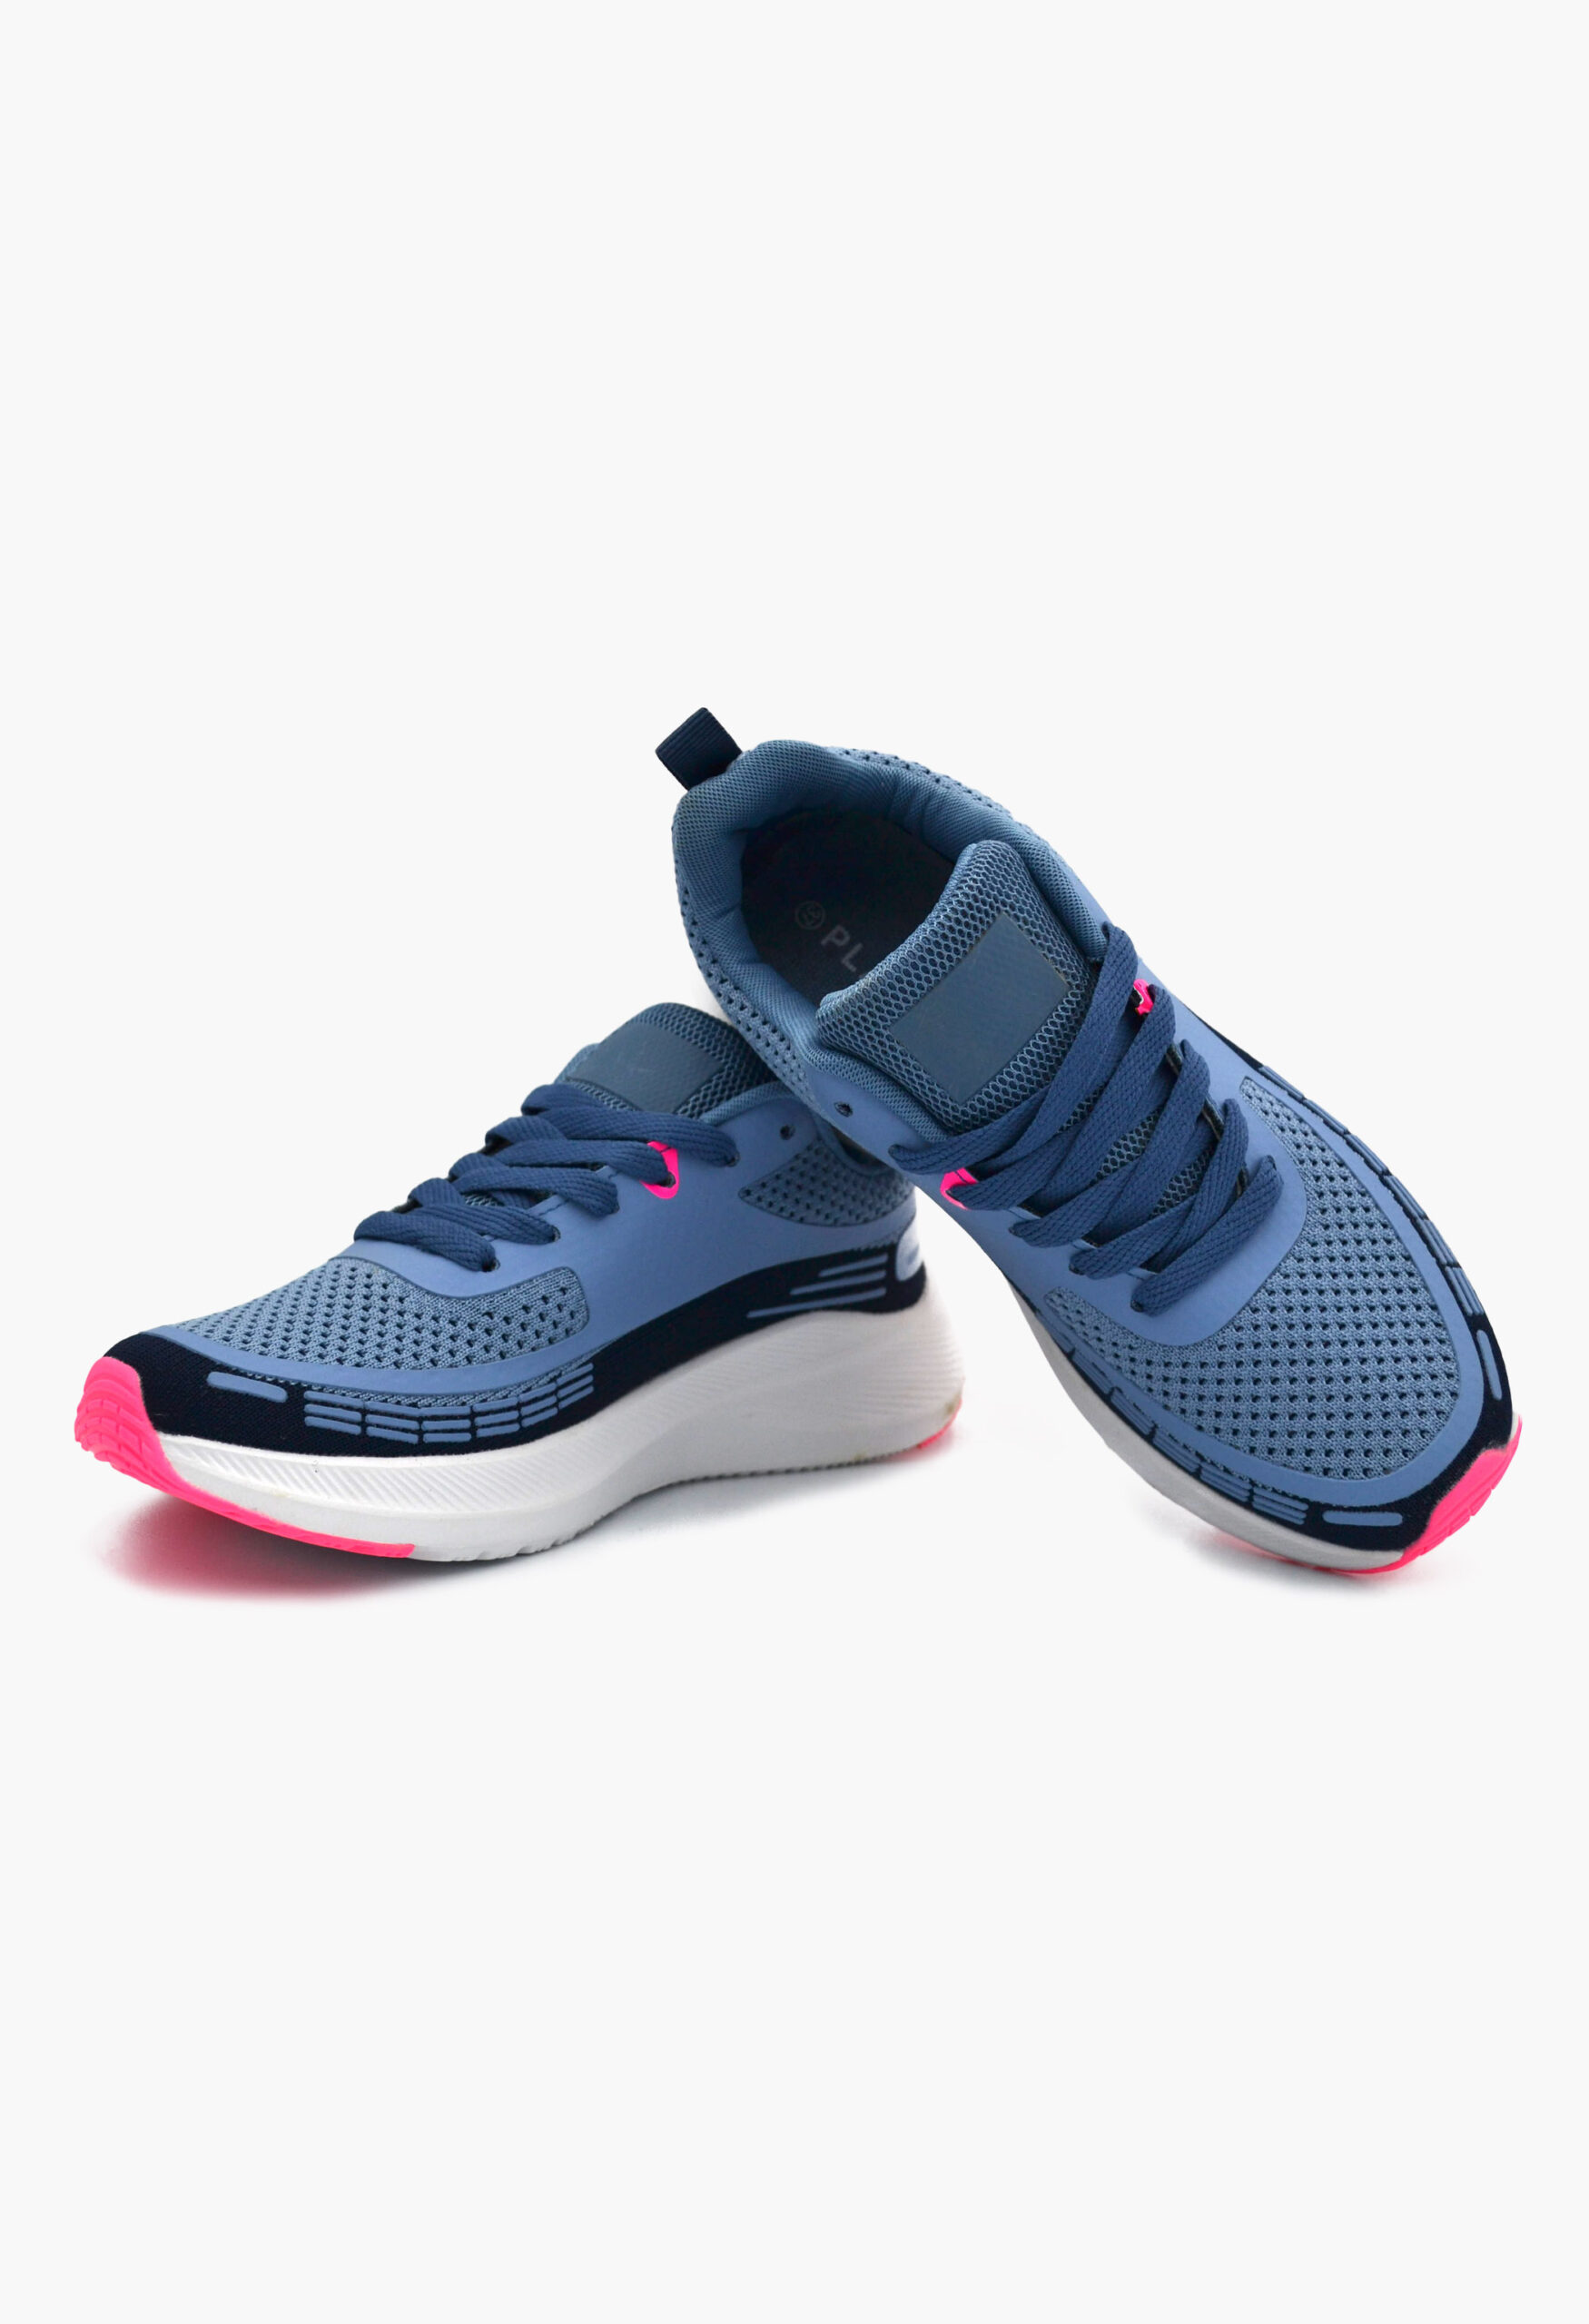 Αθλητικά Παπούτσια για Τρέξιμο Μπλε / B-50-2-blue Γυναικεία Αθλητικά και Sneakers joya.gr